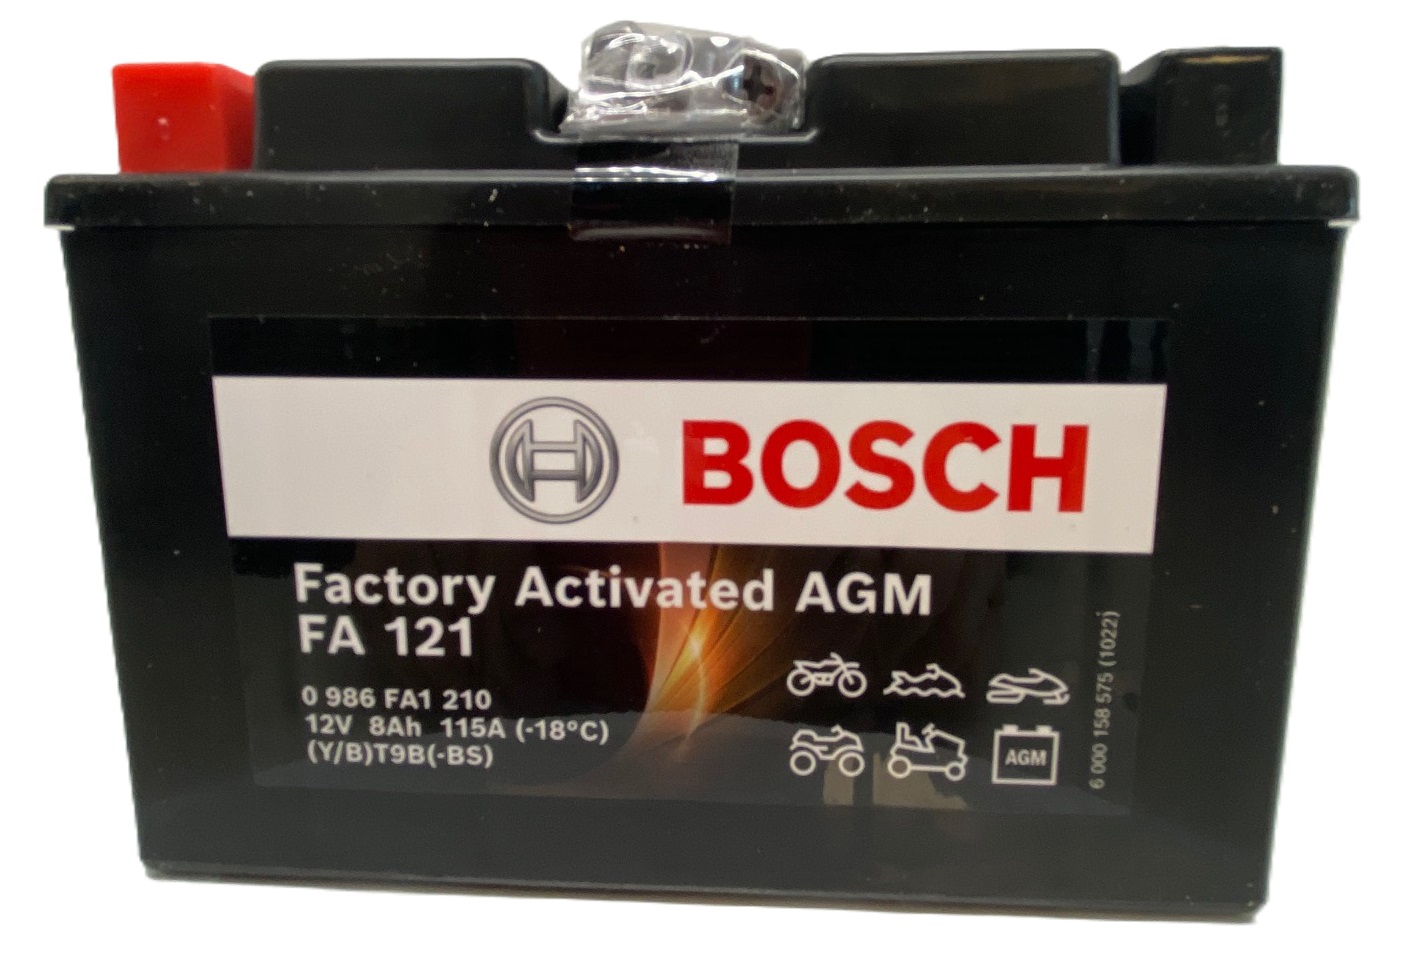 Batterie de démarrage BOSCH S5A08